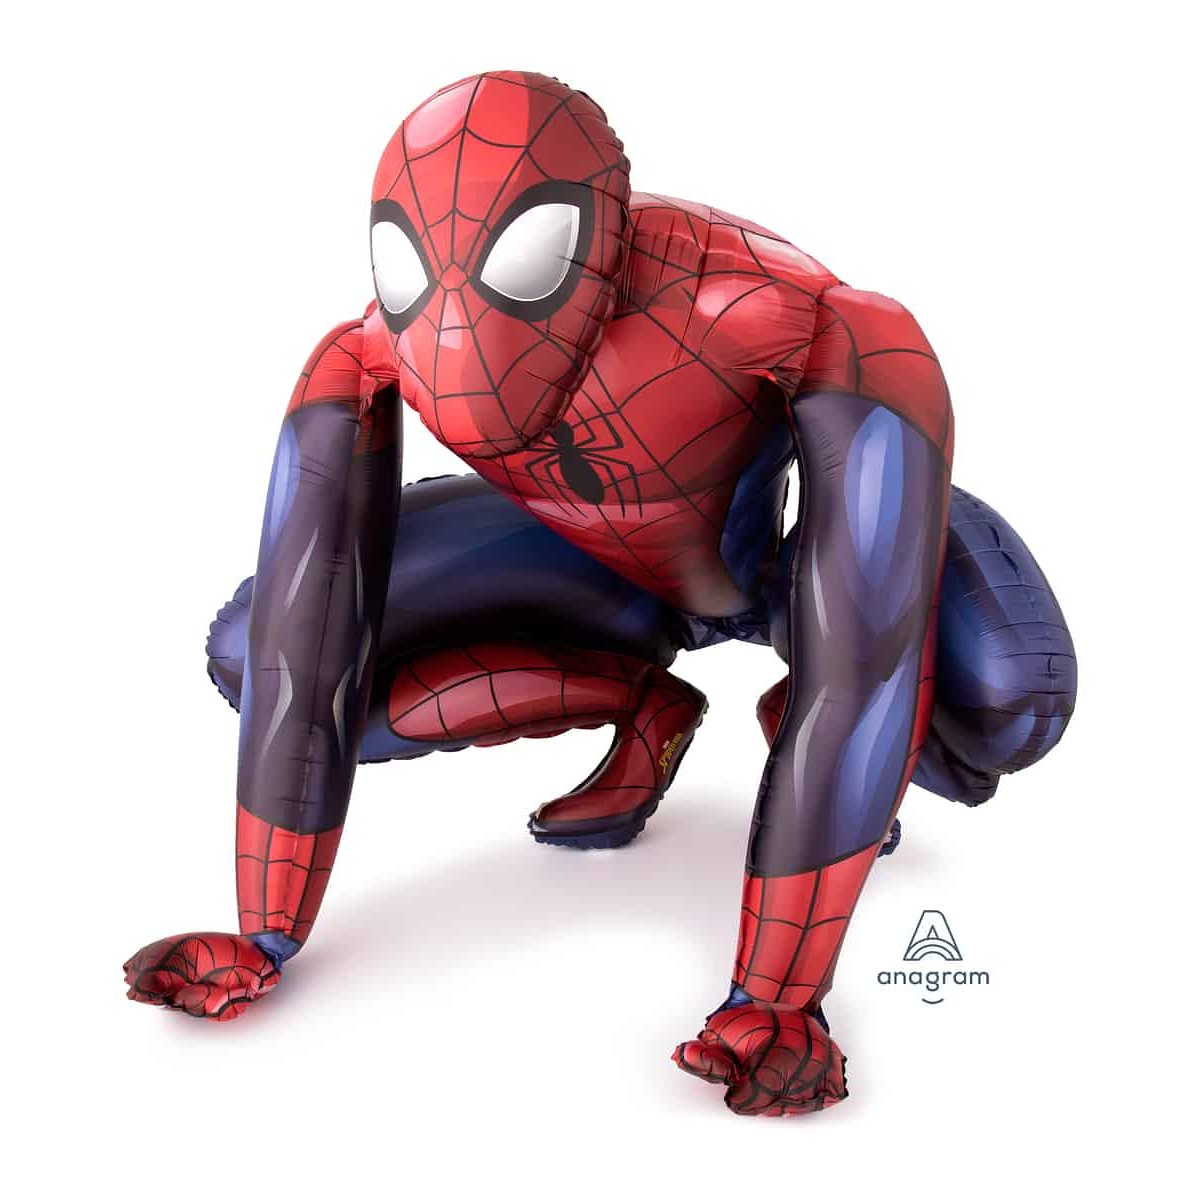 Airwalkers Spiderman 36"/91cm